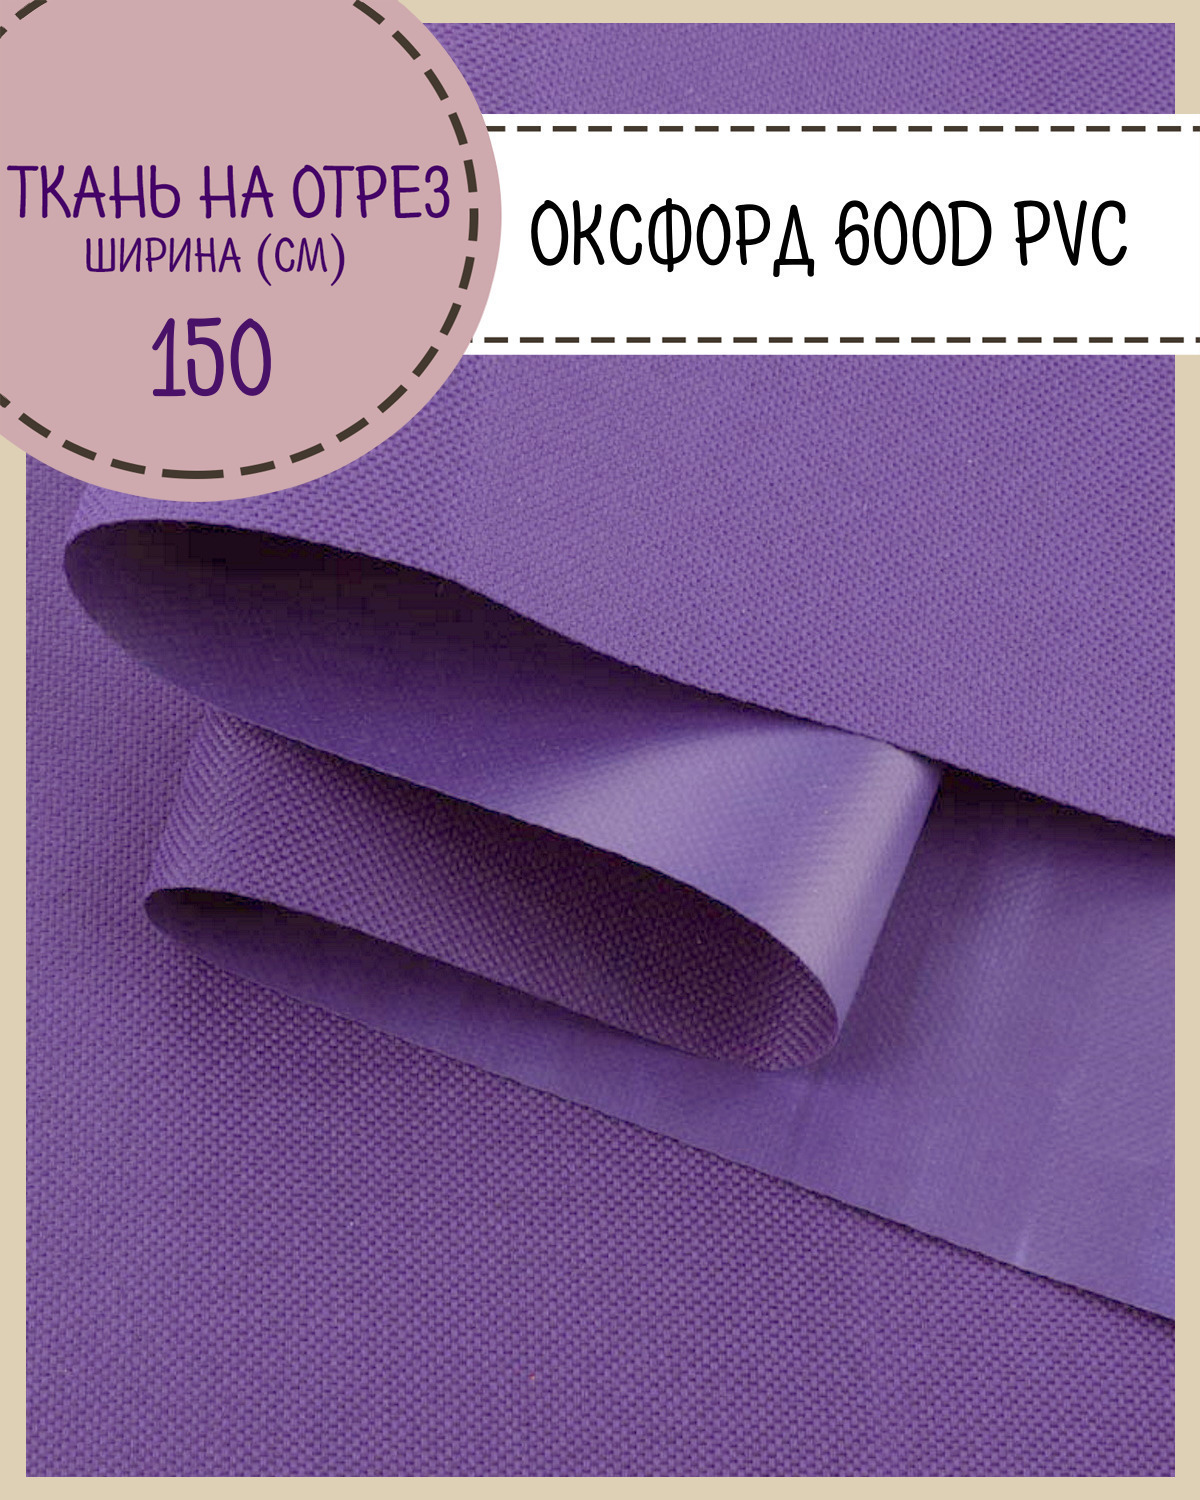 Ткань Оксфорд Любодом 600D PVC водоотталкивающая, цв. фиолетовый , на отрез, 150*100см